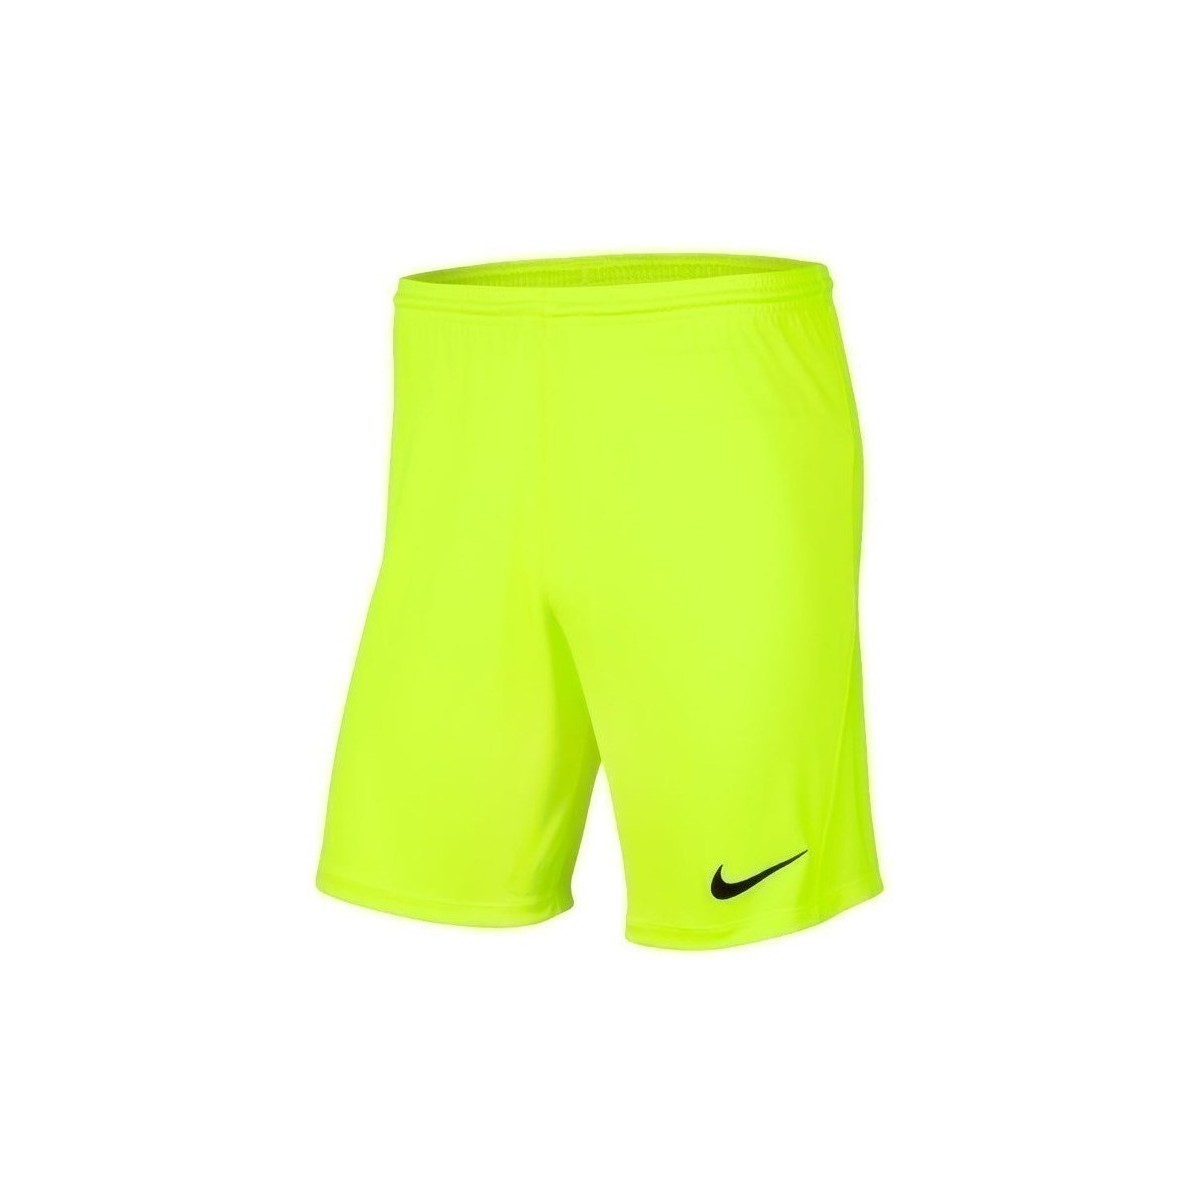 Îmbracaminte Bărbați Pantaloni trei sferturi Nike Dry Park Iii verde